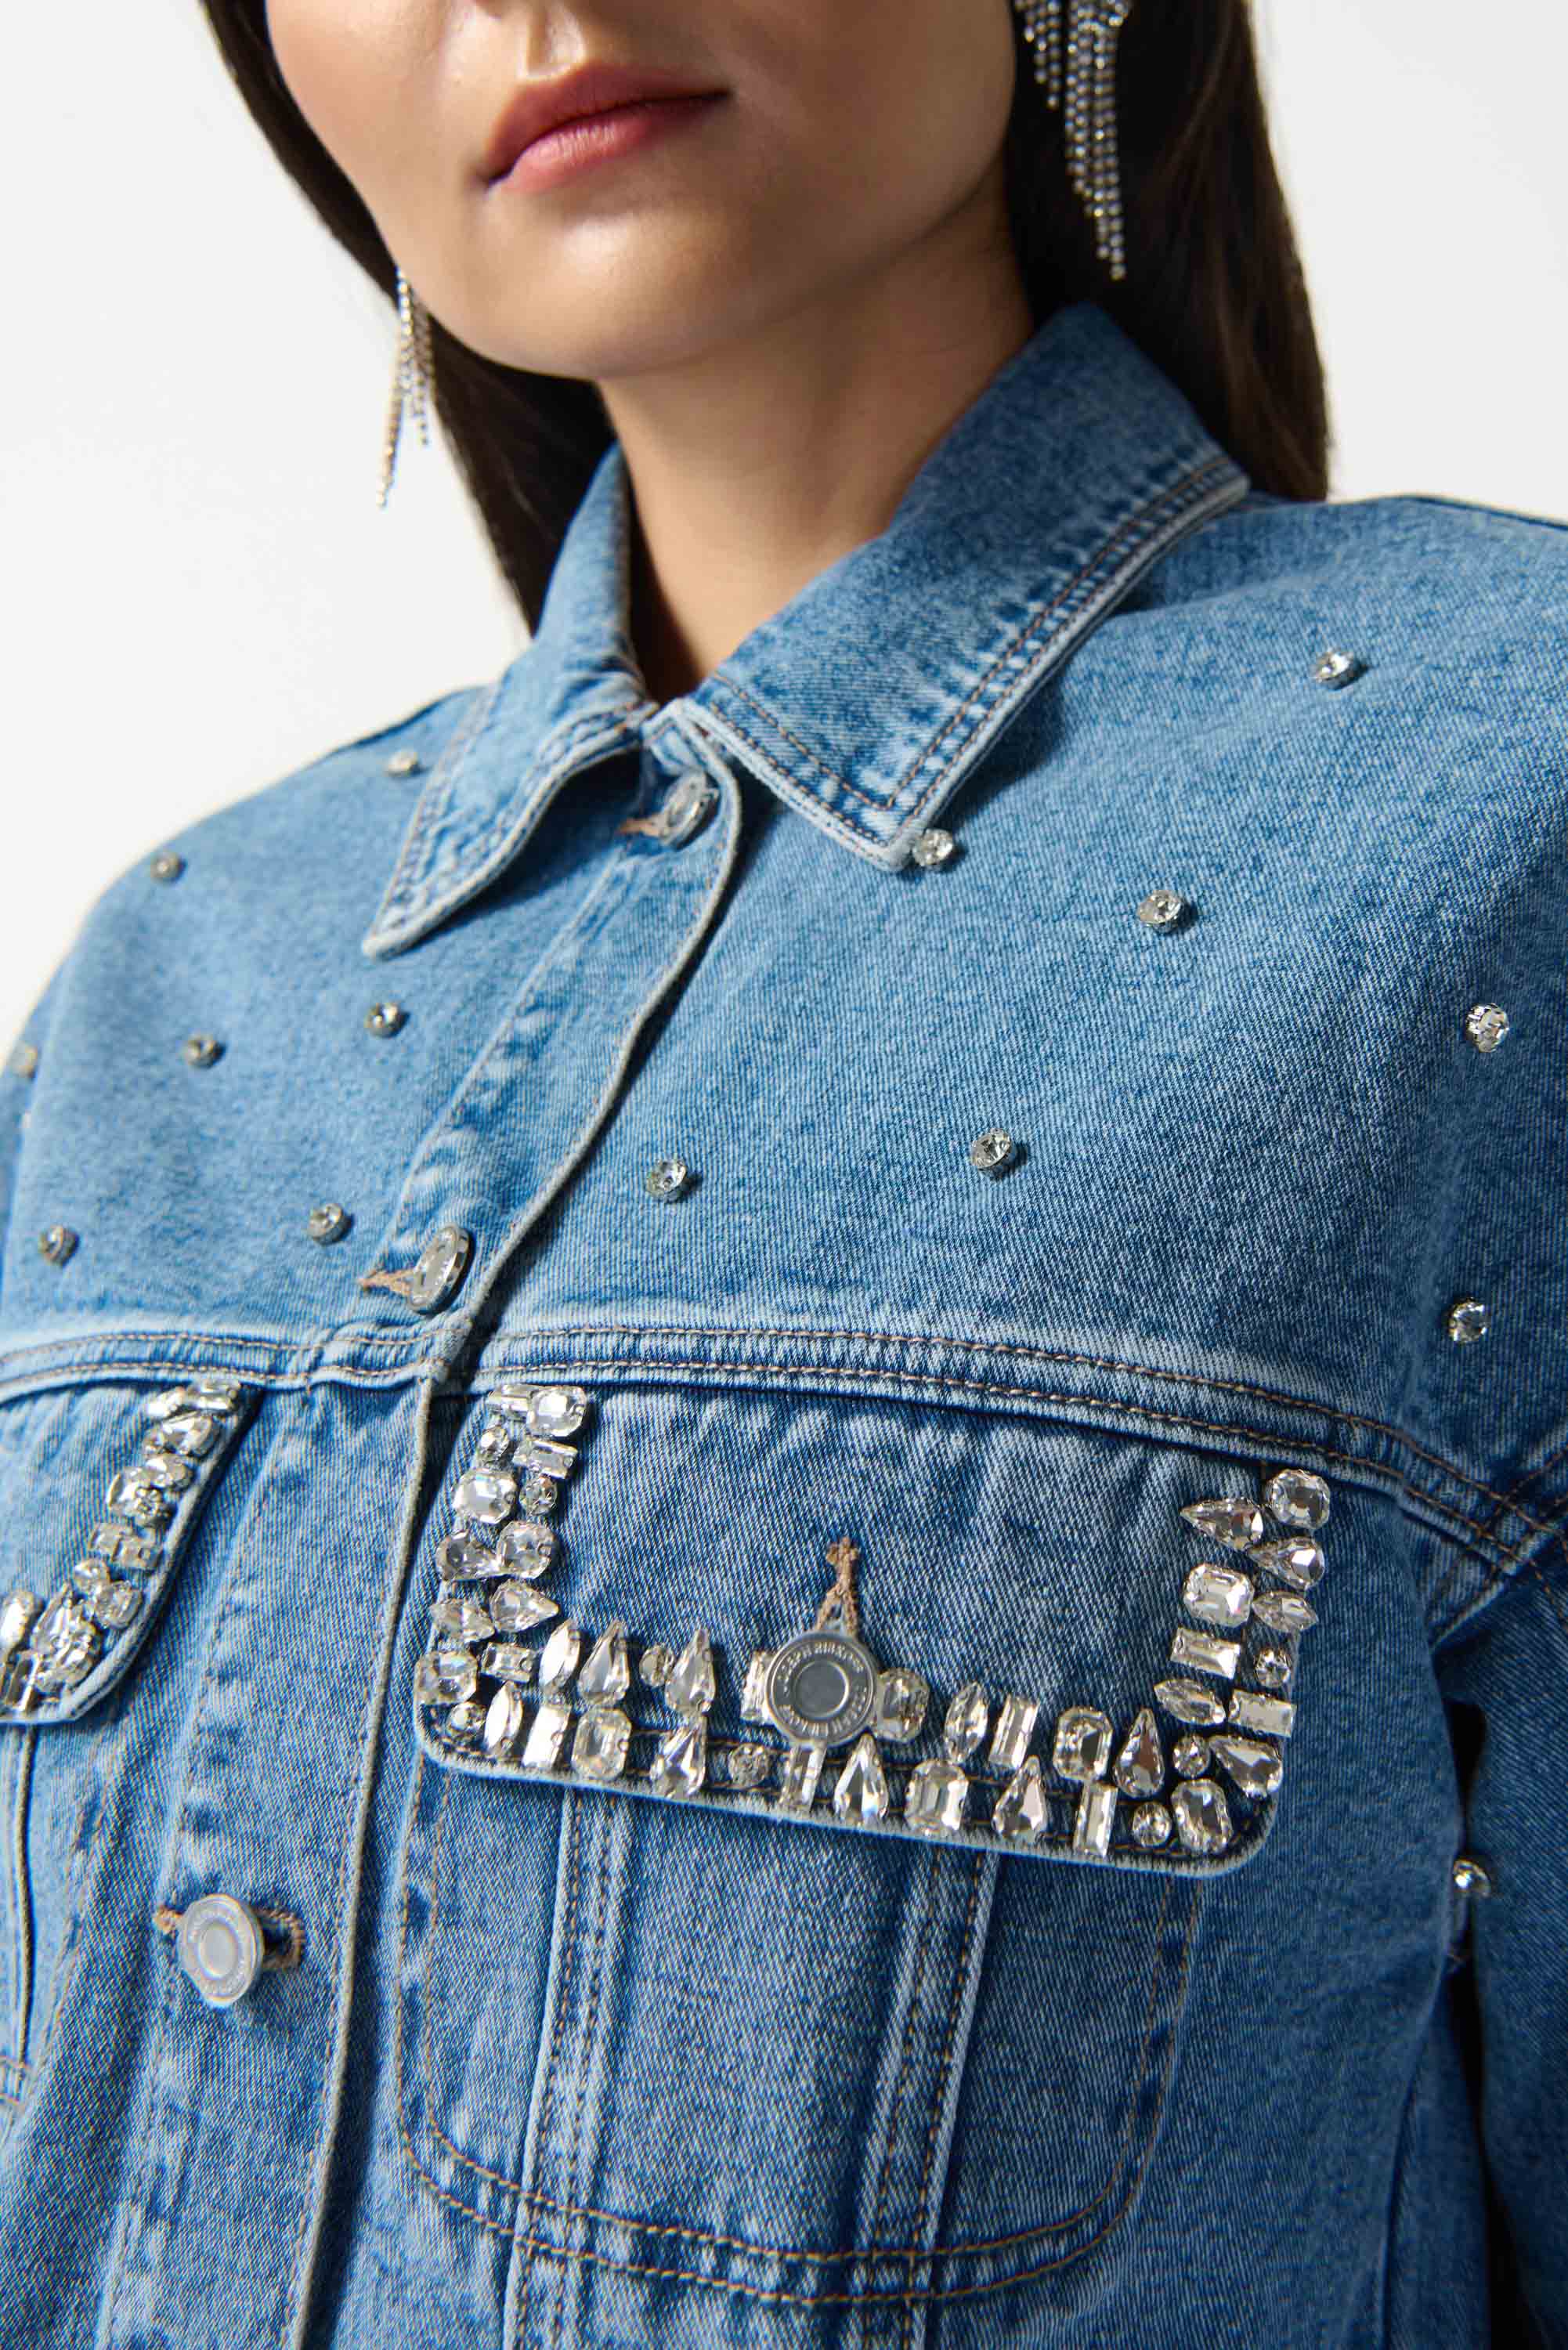 Joseph Ribkoff (242917) women's Long Sleeve Button up Rhinestone Embellished Denim Boxy Jacket in Medium Wash